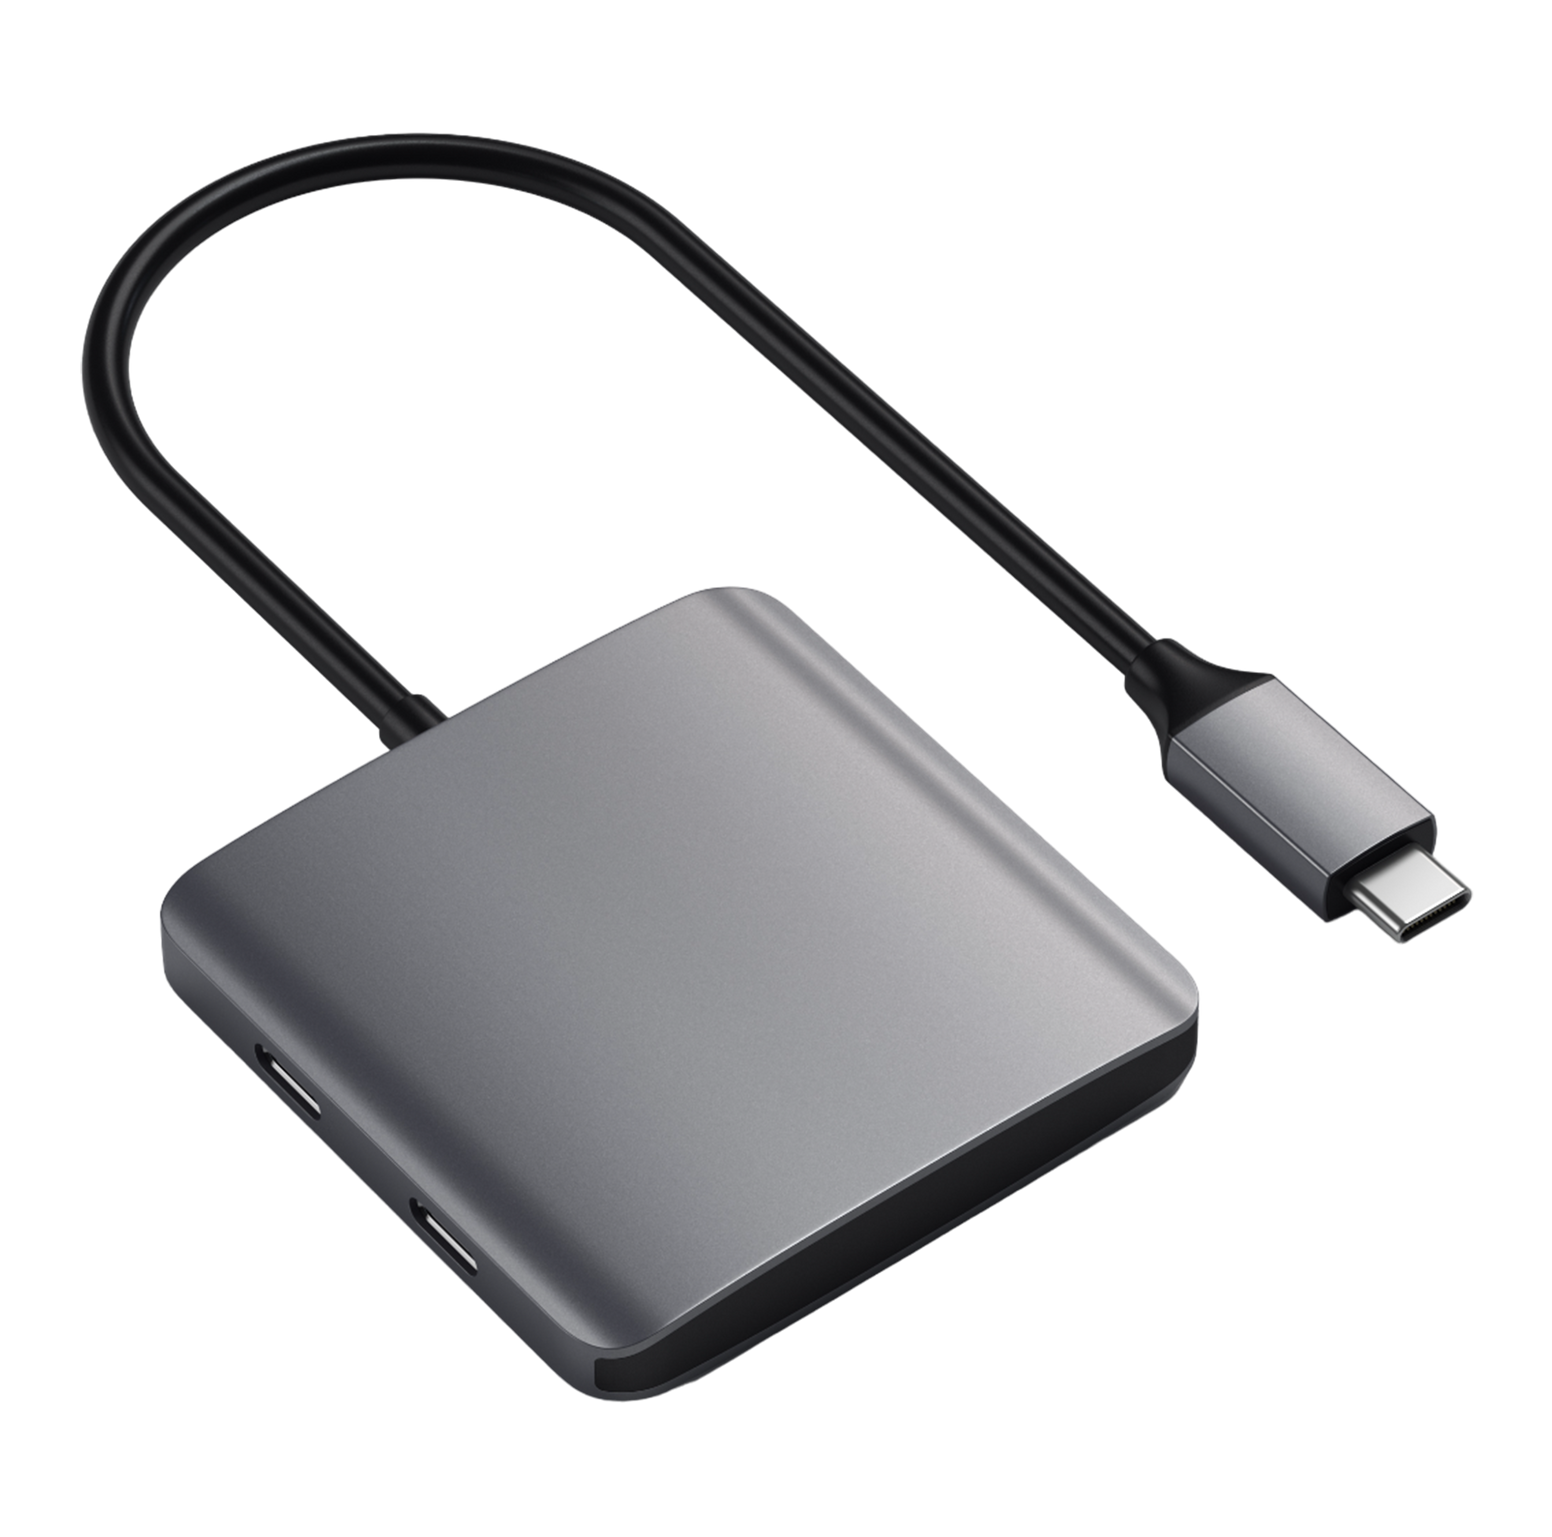 Satechi 4-Port USB-C Hub